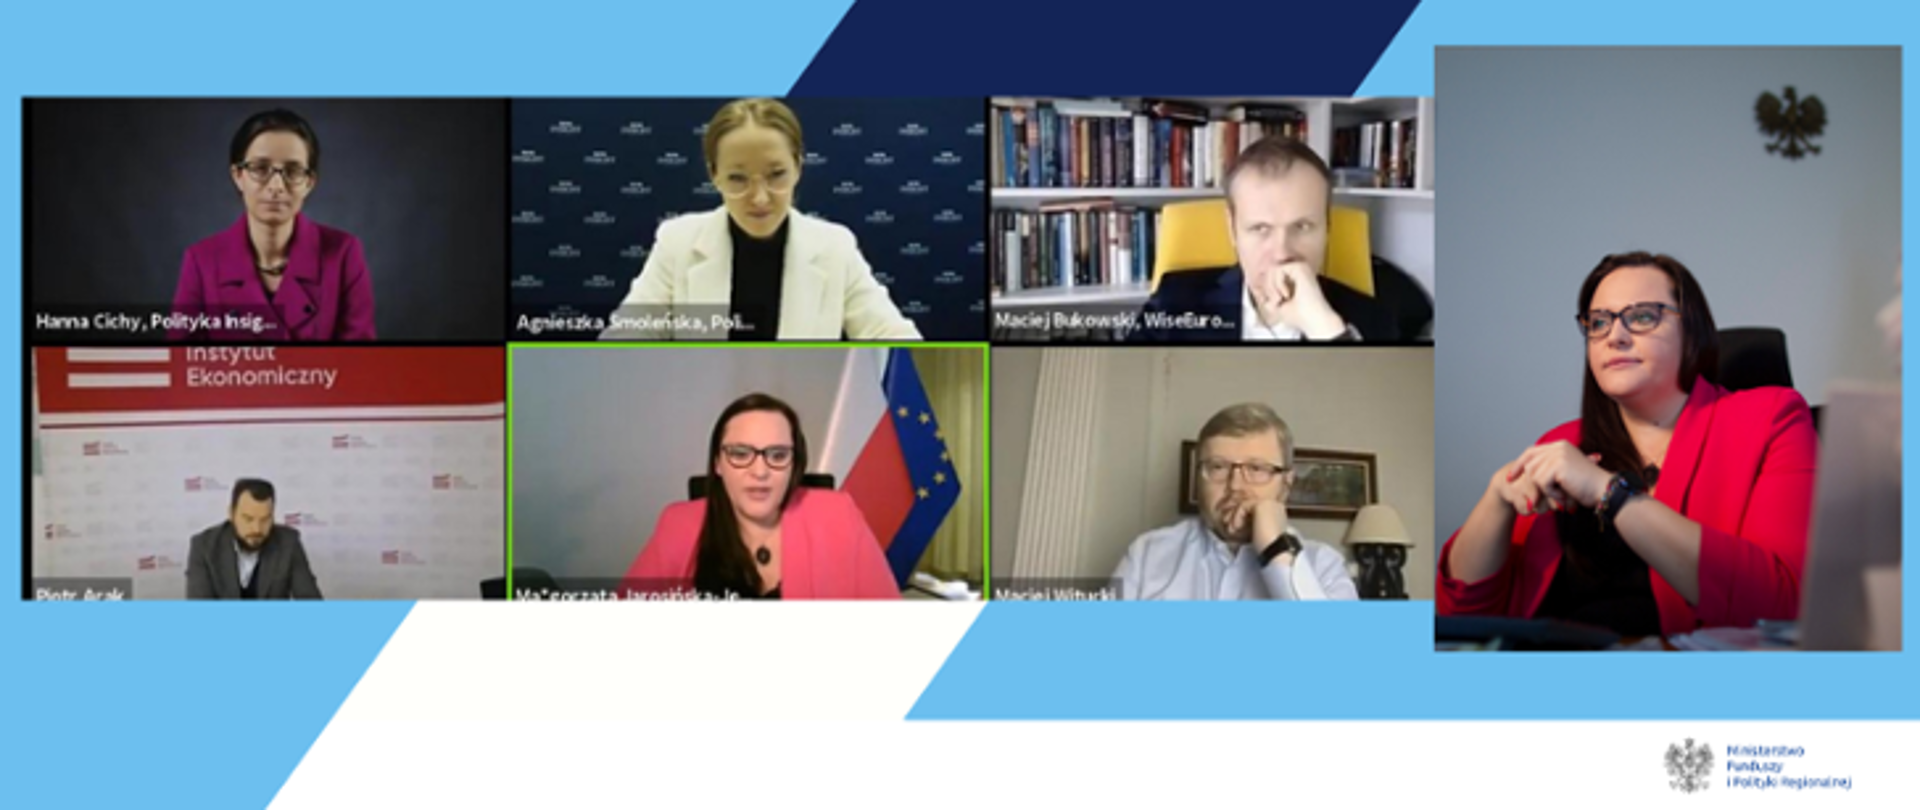 Zrzut ekranu z debaty online nad Krajowym Planem Odbudowy. Widoczny kolaż zdjęć osób biorących udział w wydarzeniu, w tym minister Małgorzaty Jarosińskiej-Jedynak.